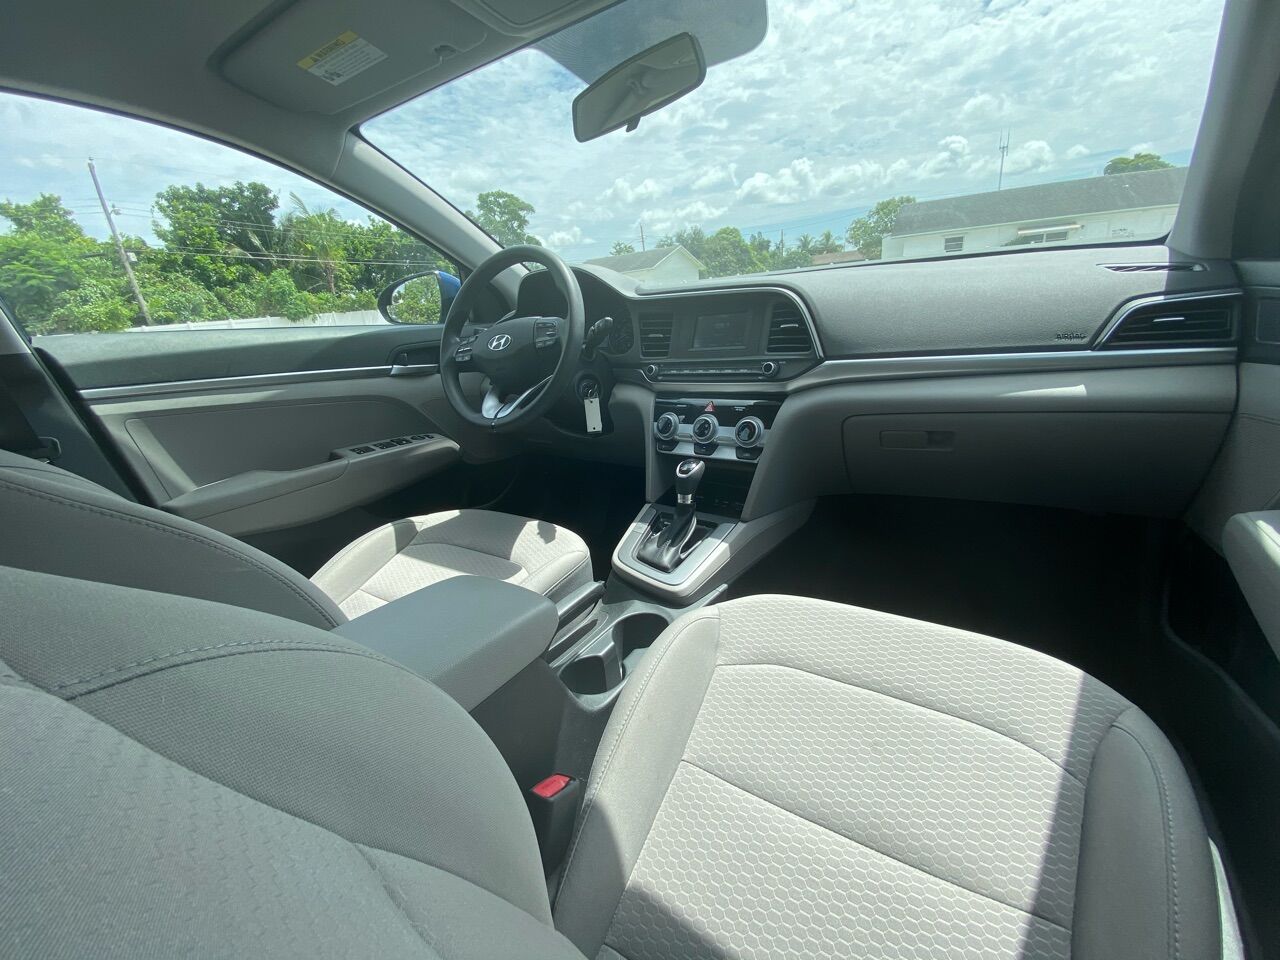 2019 Hyundai Elantra Sedan - $16,800